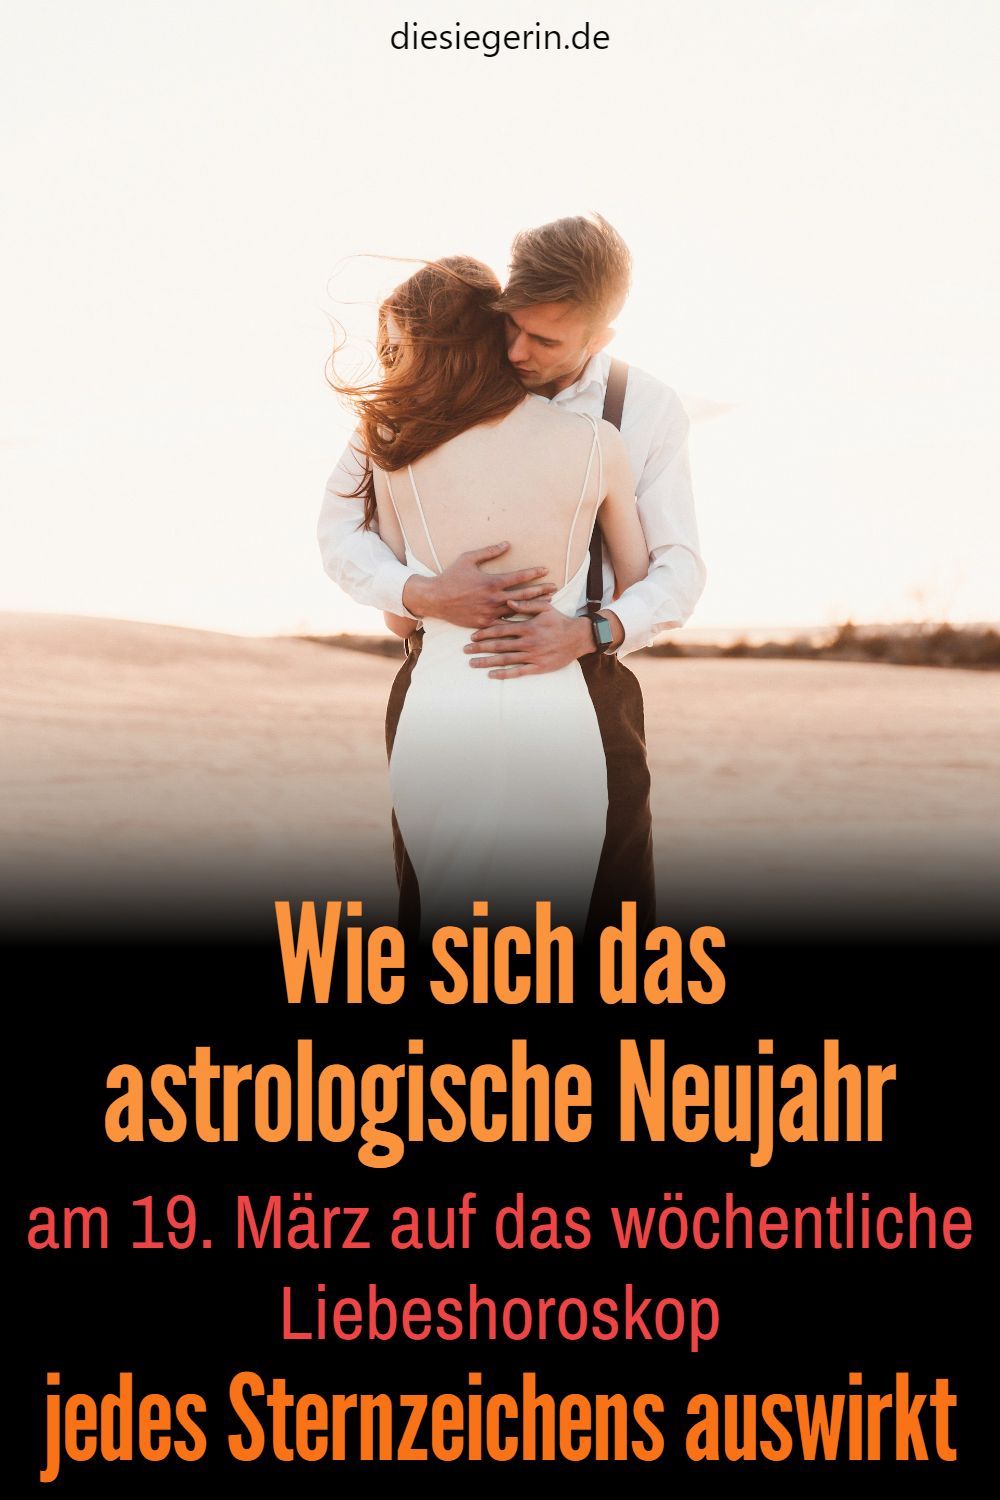 Wie sich das astrologische Neujahr am 19. März auf das wöchentliche Liebeshoroskop jedes Sternzeichens auswirkt